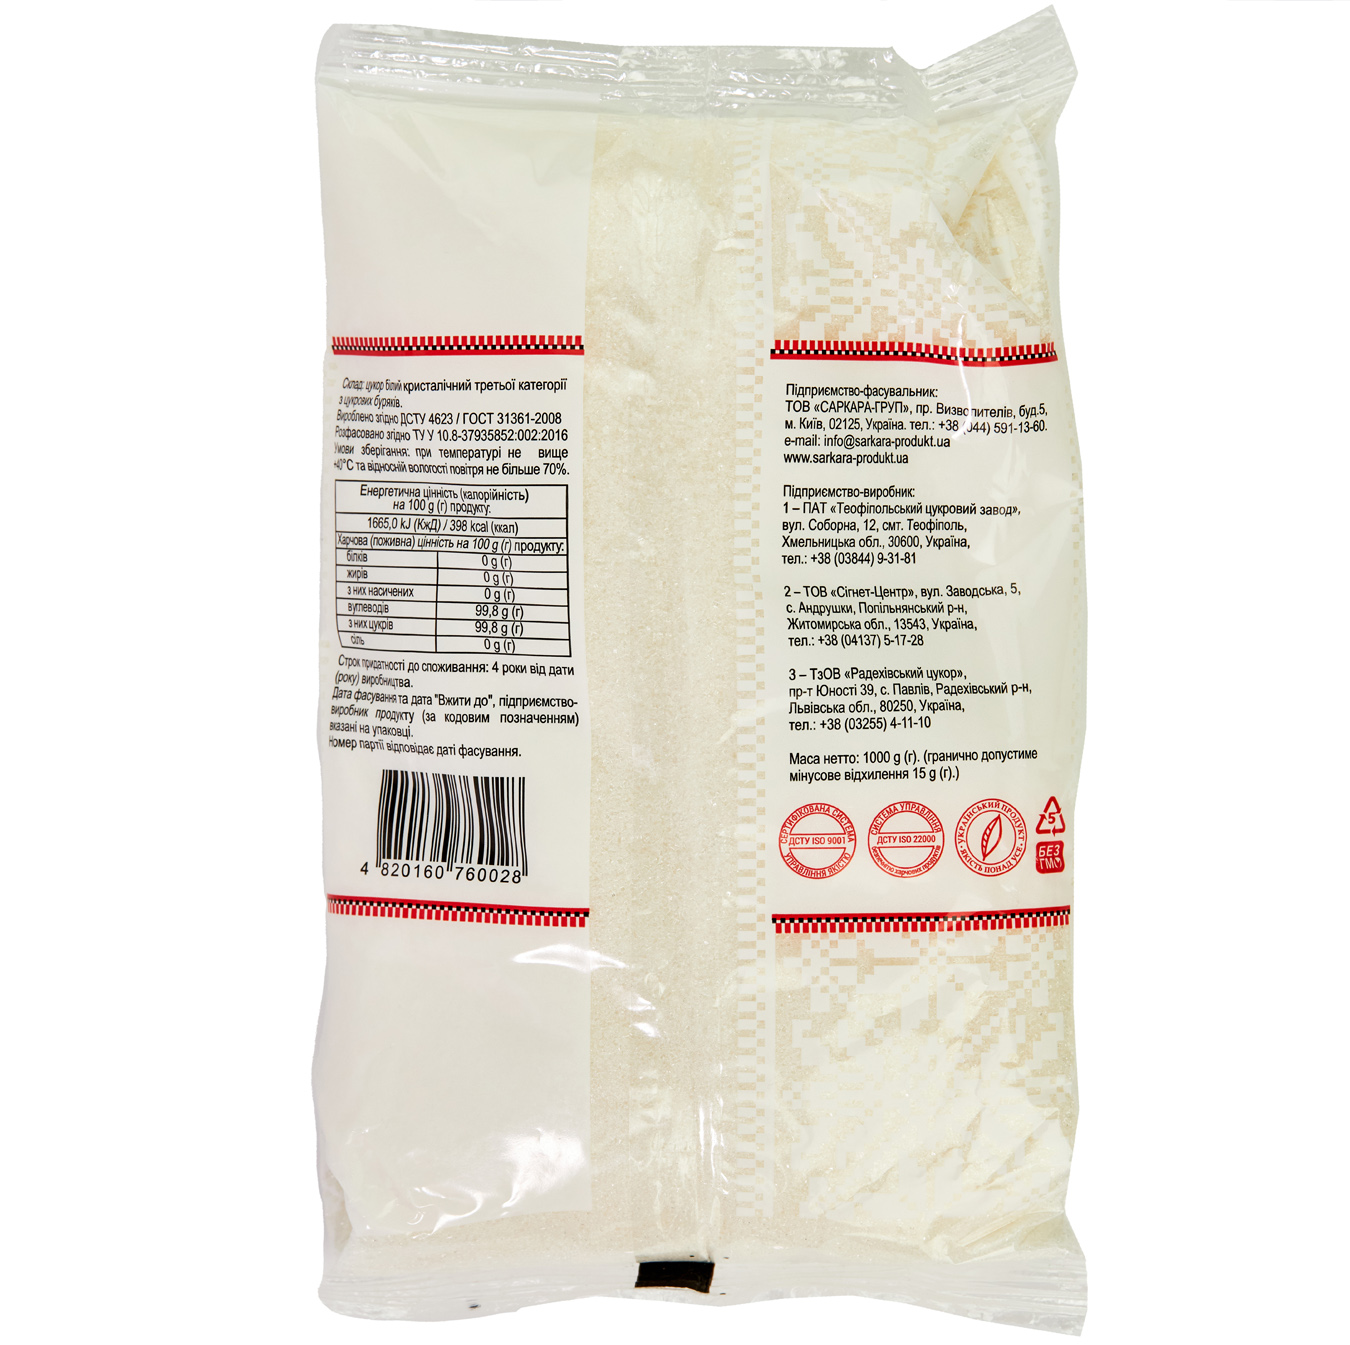 Sarkara Produkt White Сrystalline Sugar 1kg 2